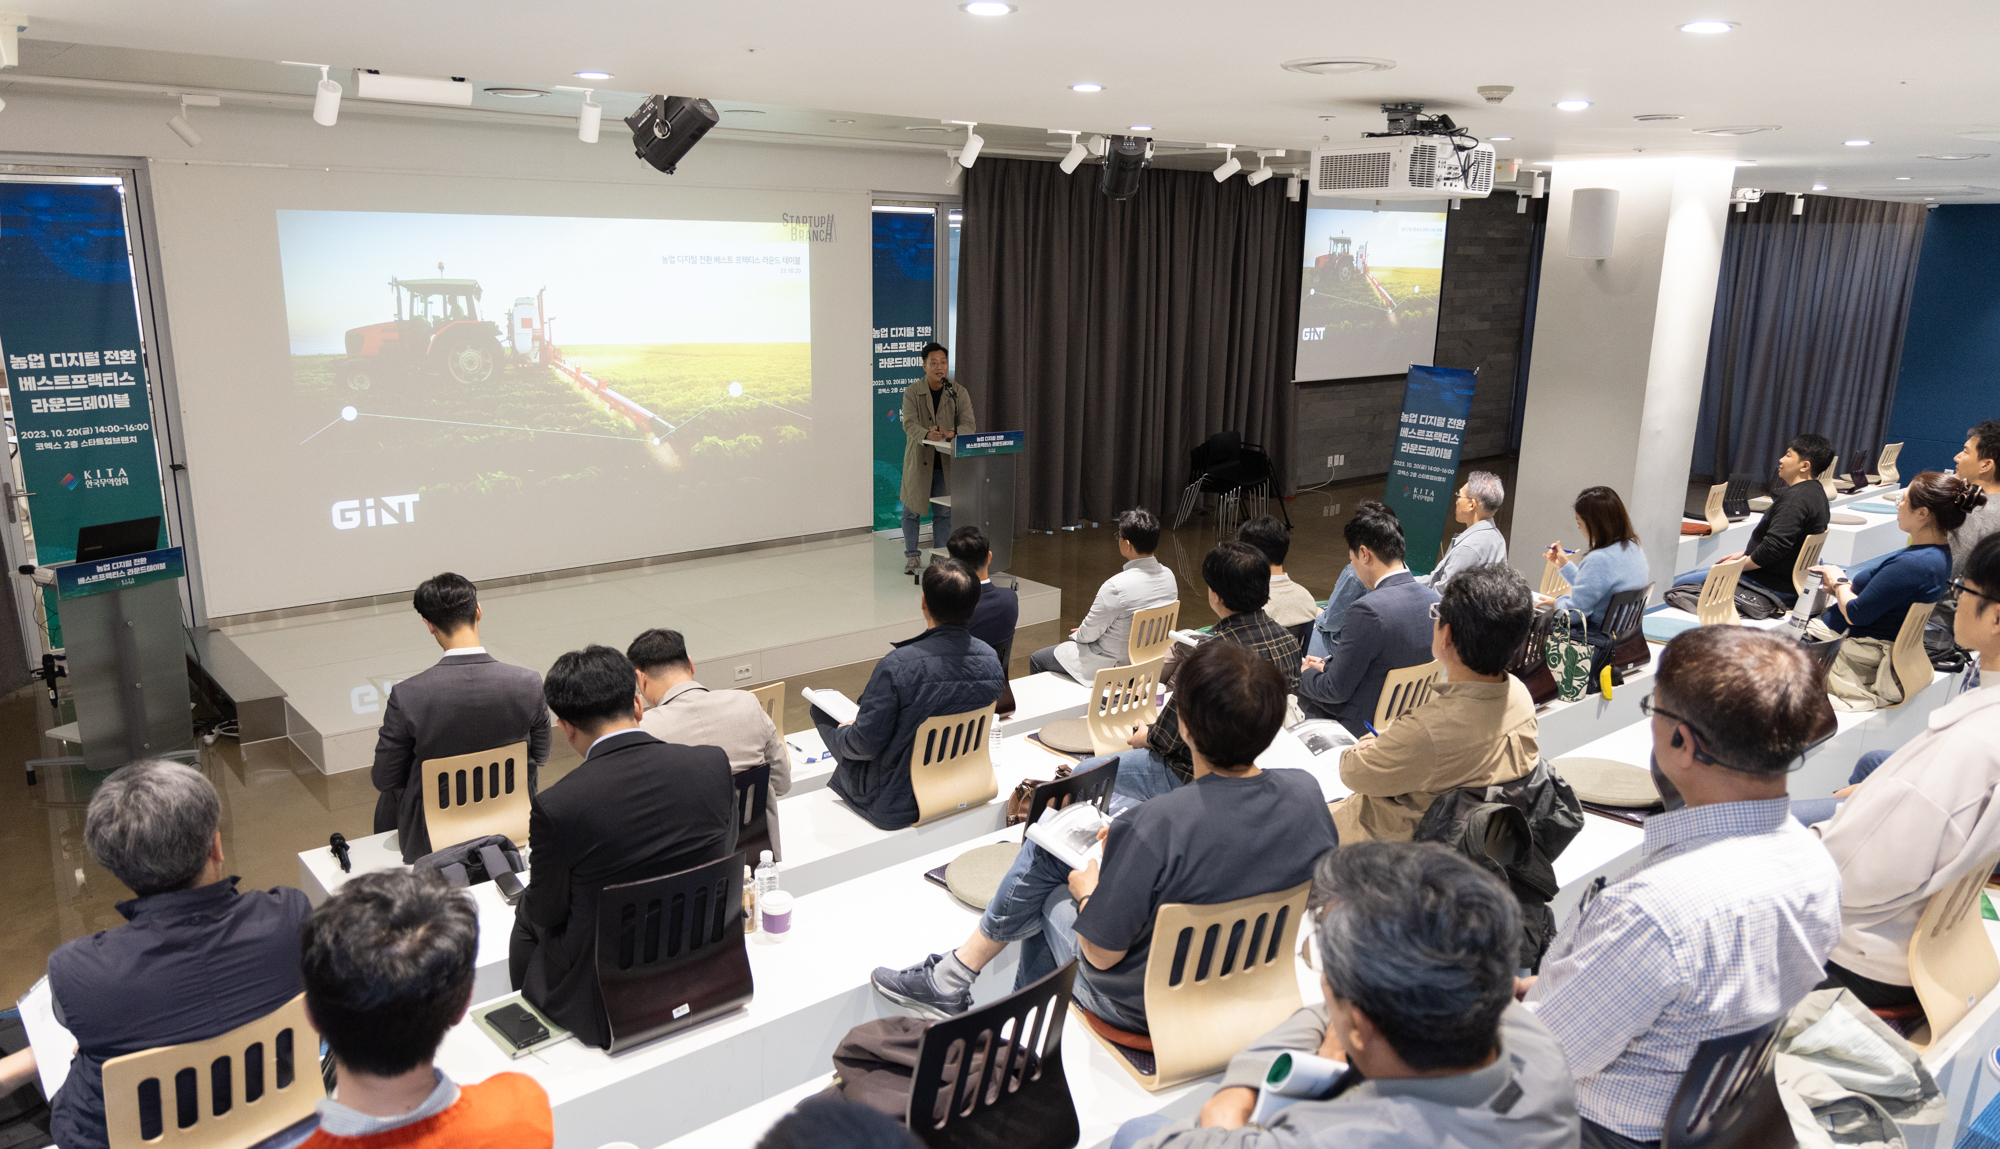 한국무역협회가 20일 코엑스 스타트업브랜치에서 개최한 ‘농업 디지털 전환 베스트 프랙티스 라운드테이블’이 진행되고 있다. 무역협회 제공